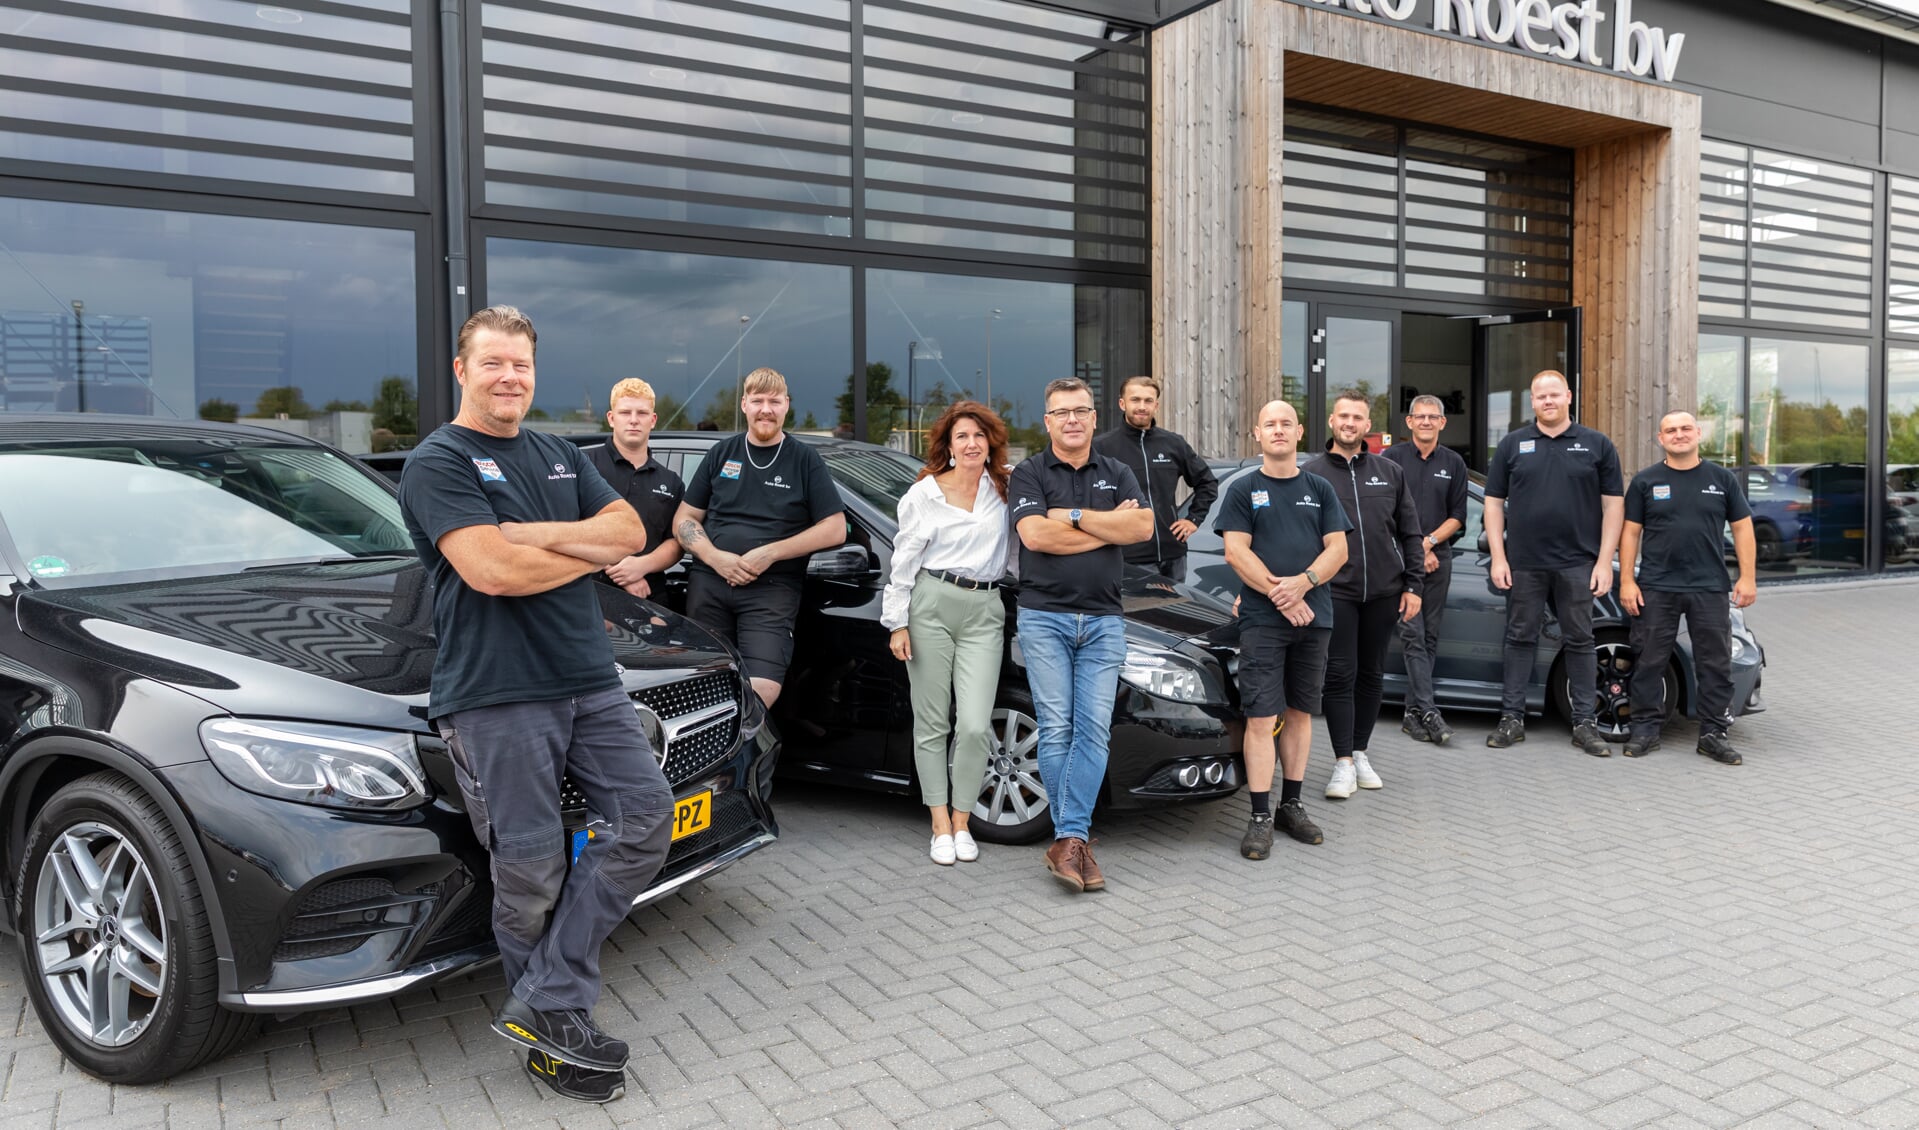 Een deel van de crew van Auto Roest met vanaf links Roy, Jayden, Richard, Astrid, Wim, Robin, Arjan, Sander, Wim, Hans en Oleg.